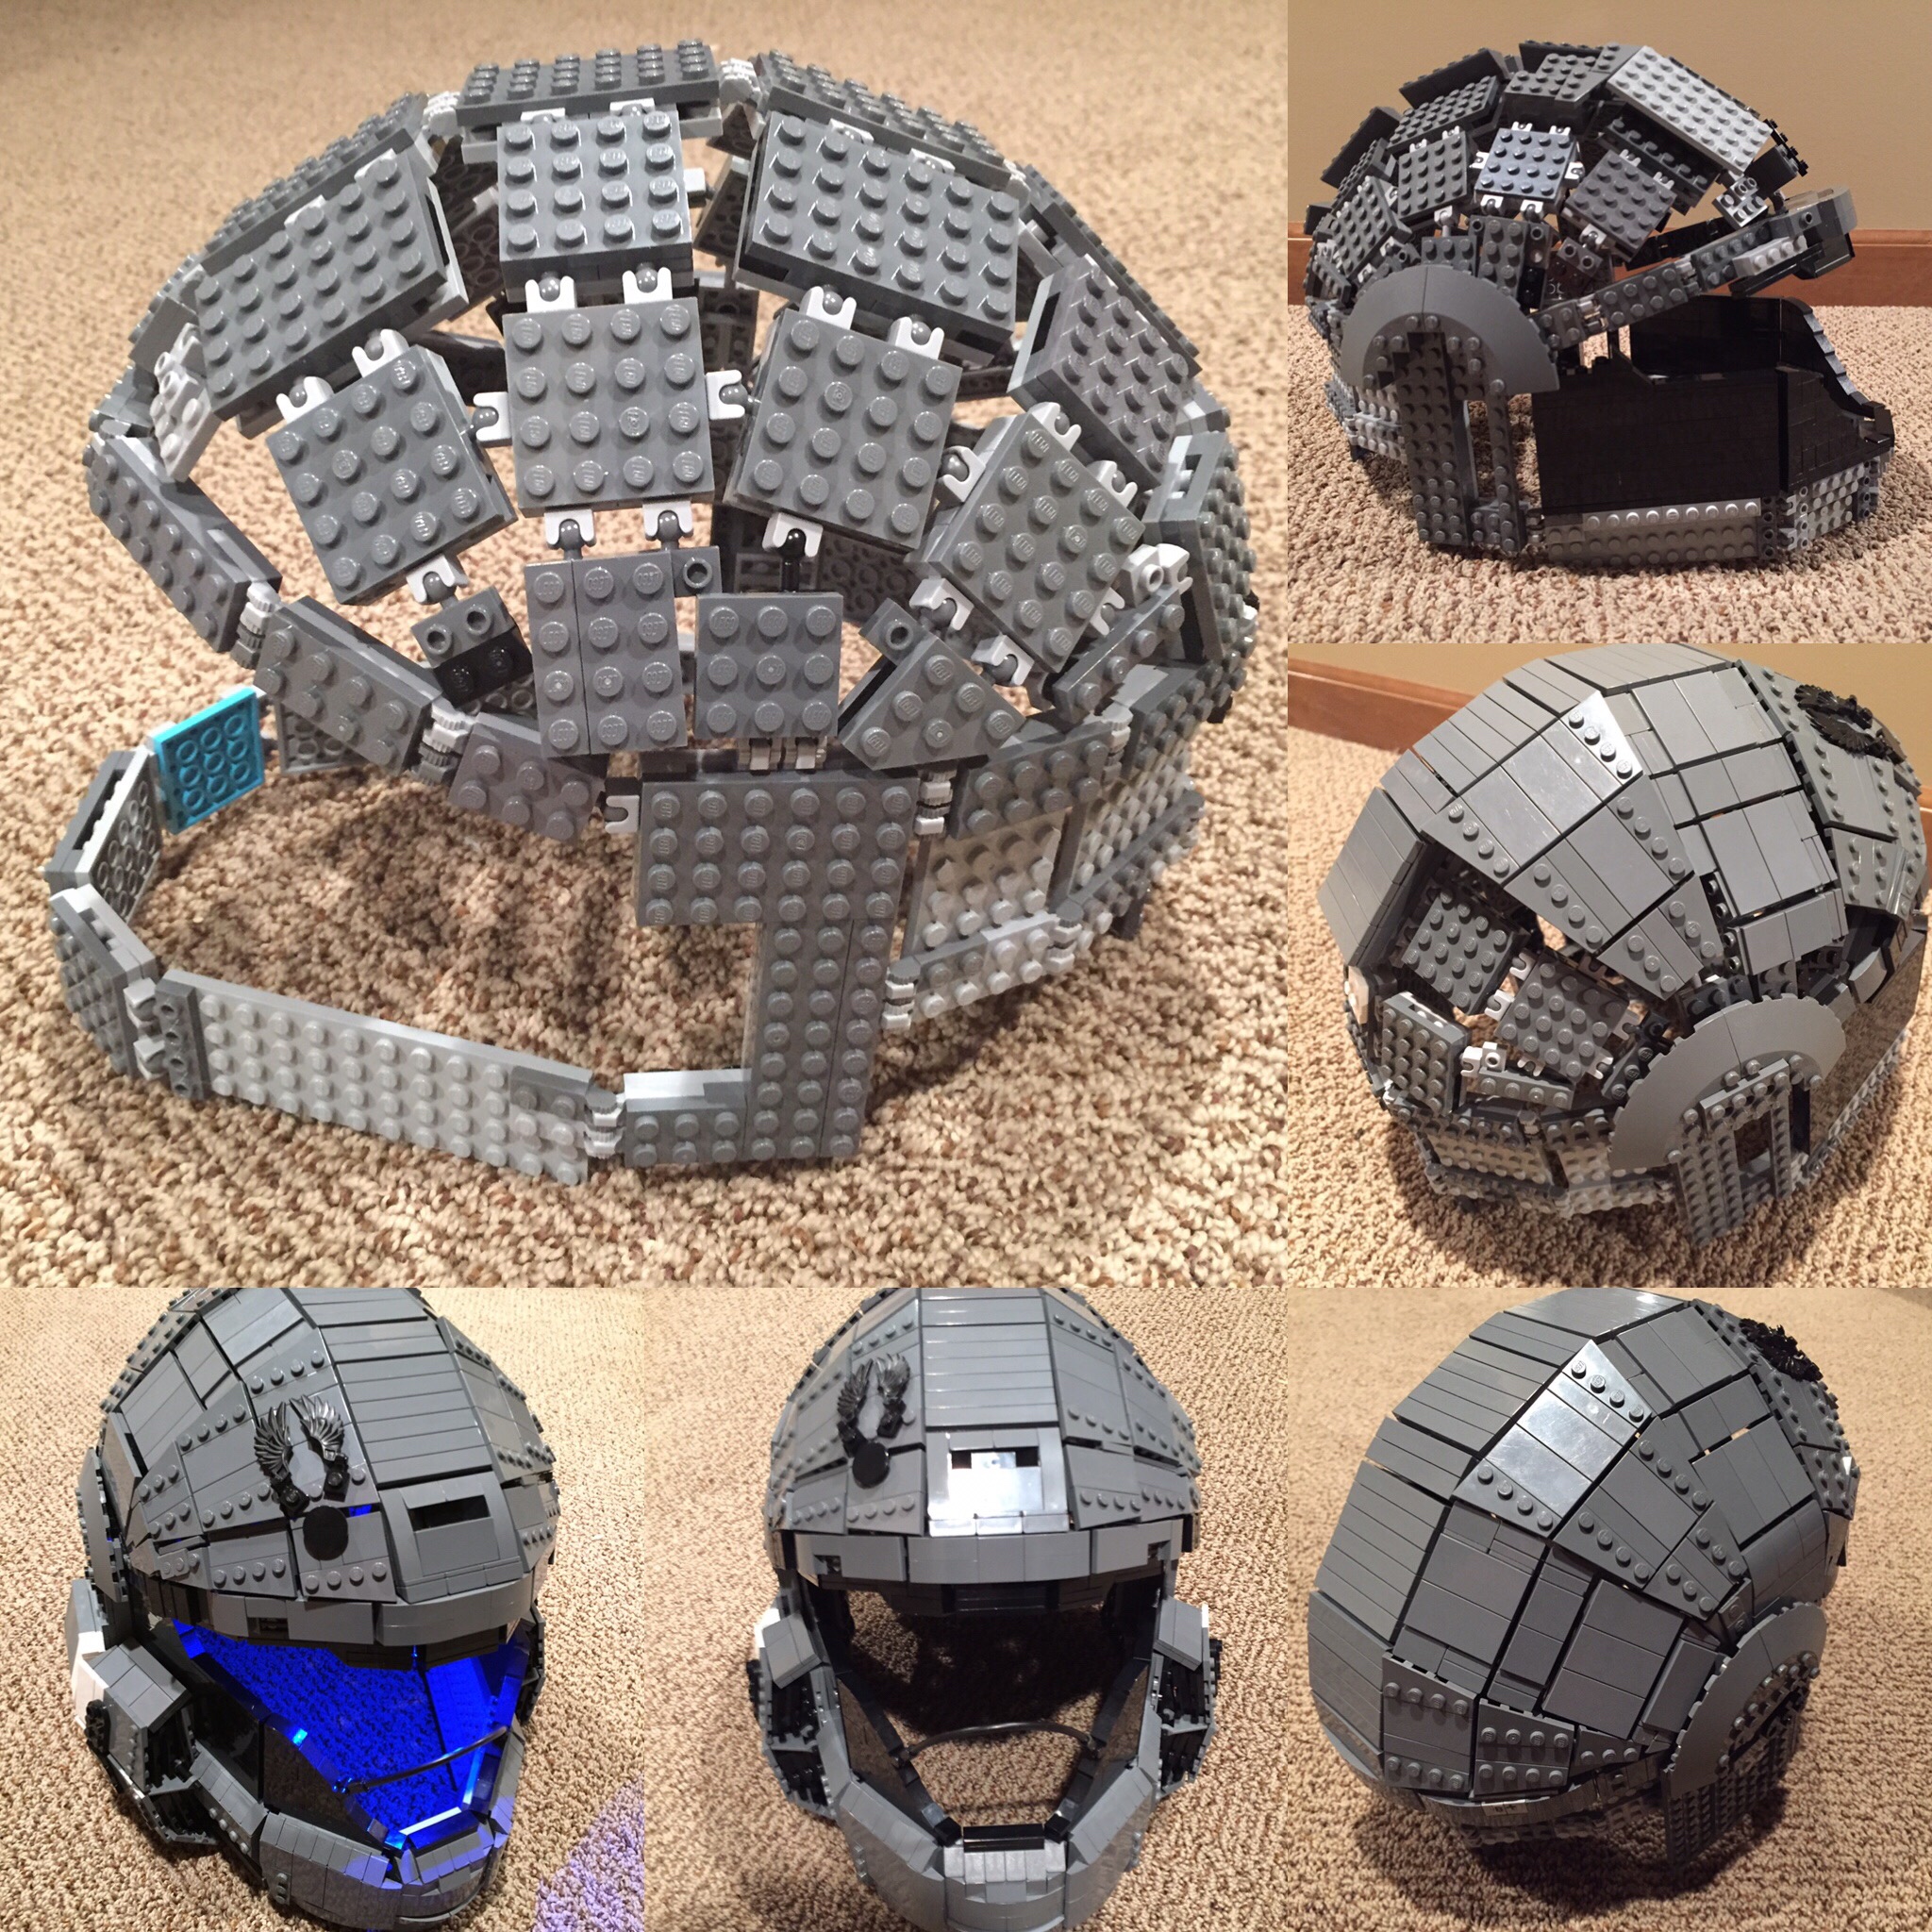 ODST HALO Helmet ricreato in scala 1:1 con i mattoncini LEGO